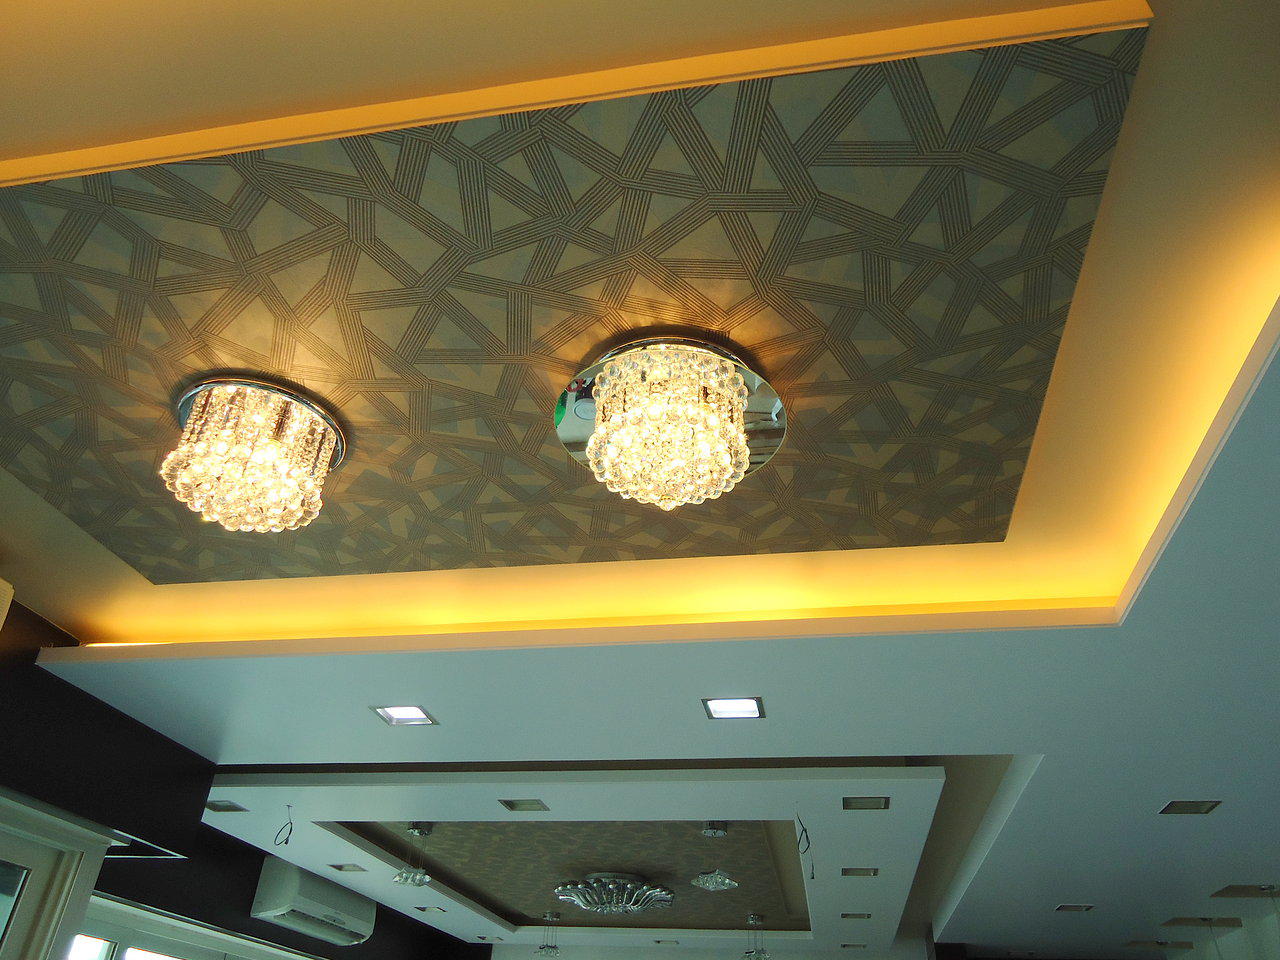 ceiling design | www.